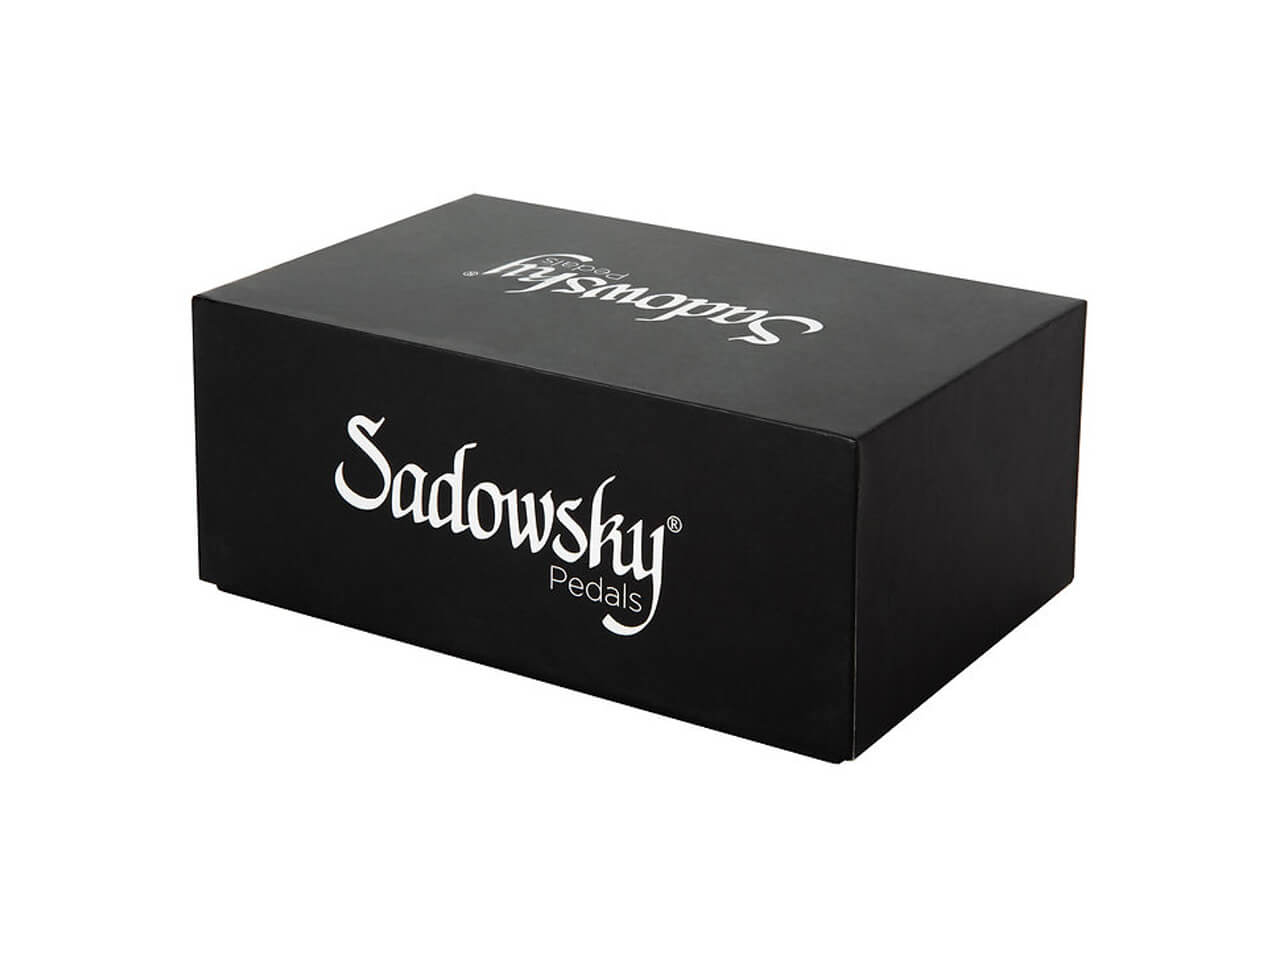 Sadowsky SAC PED SBP 2 V2 (ベース用プリアンプ)